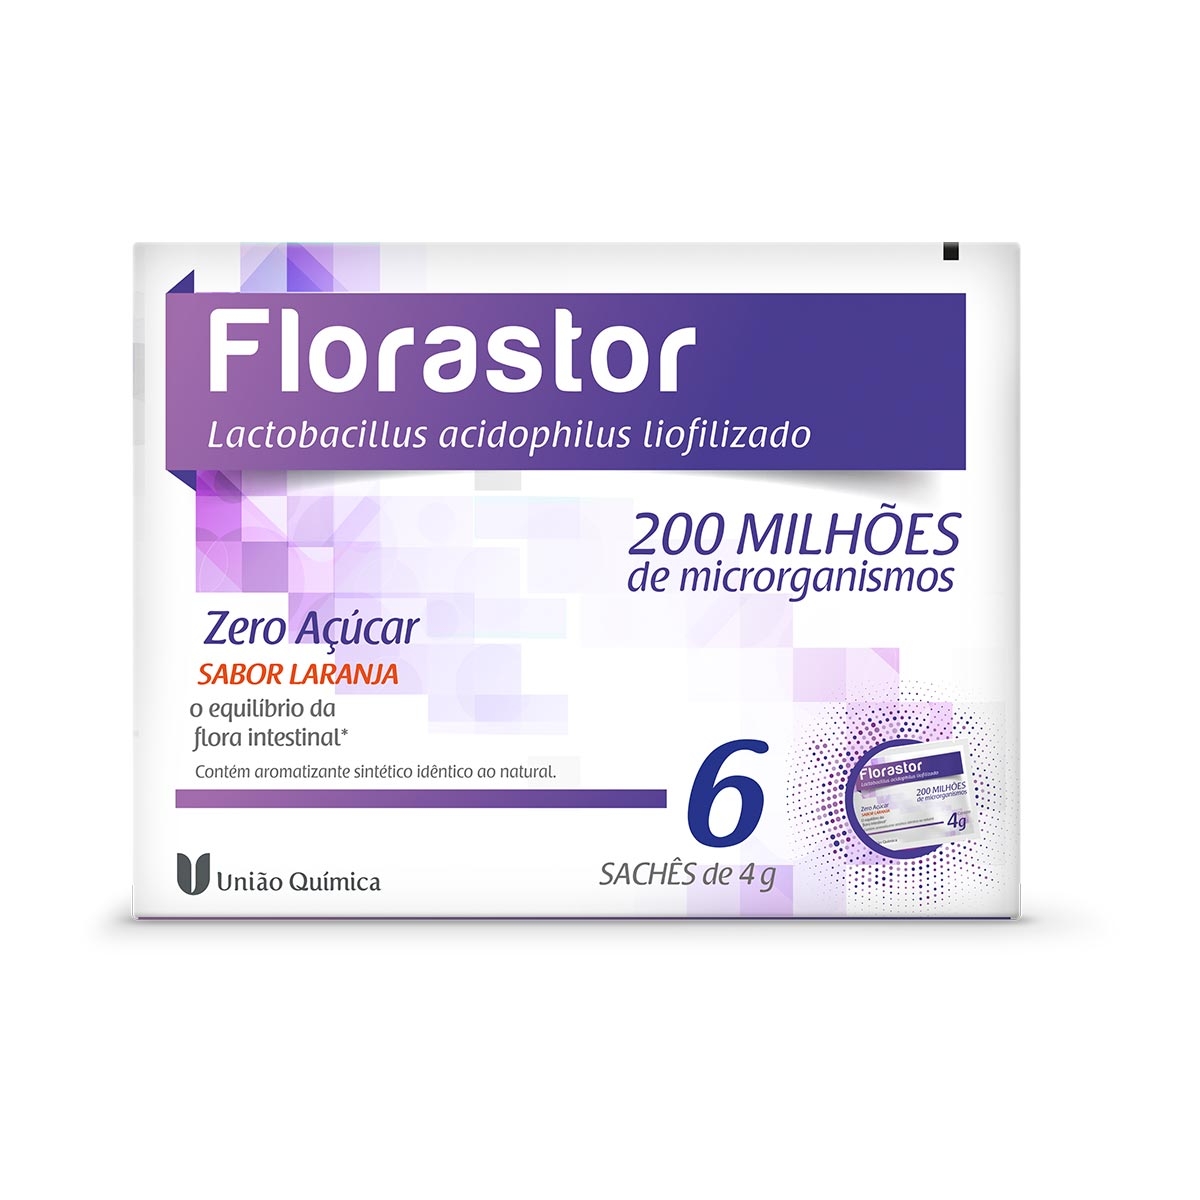 Probiótico Florastor 6 sachês de 4g cada